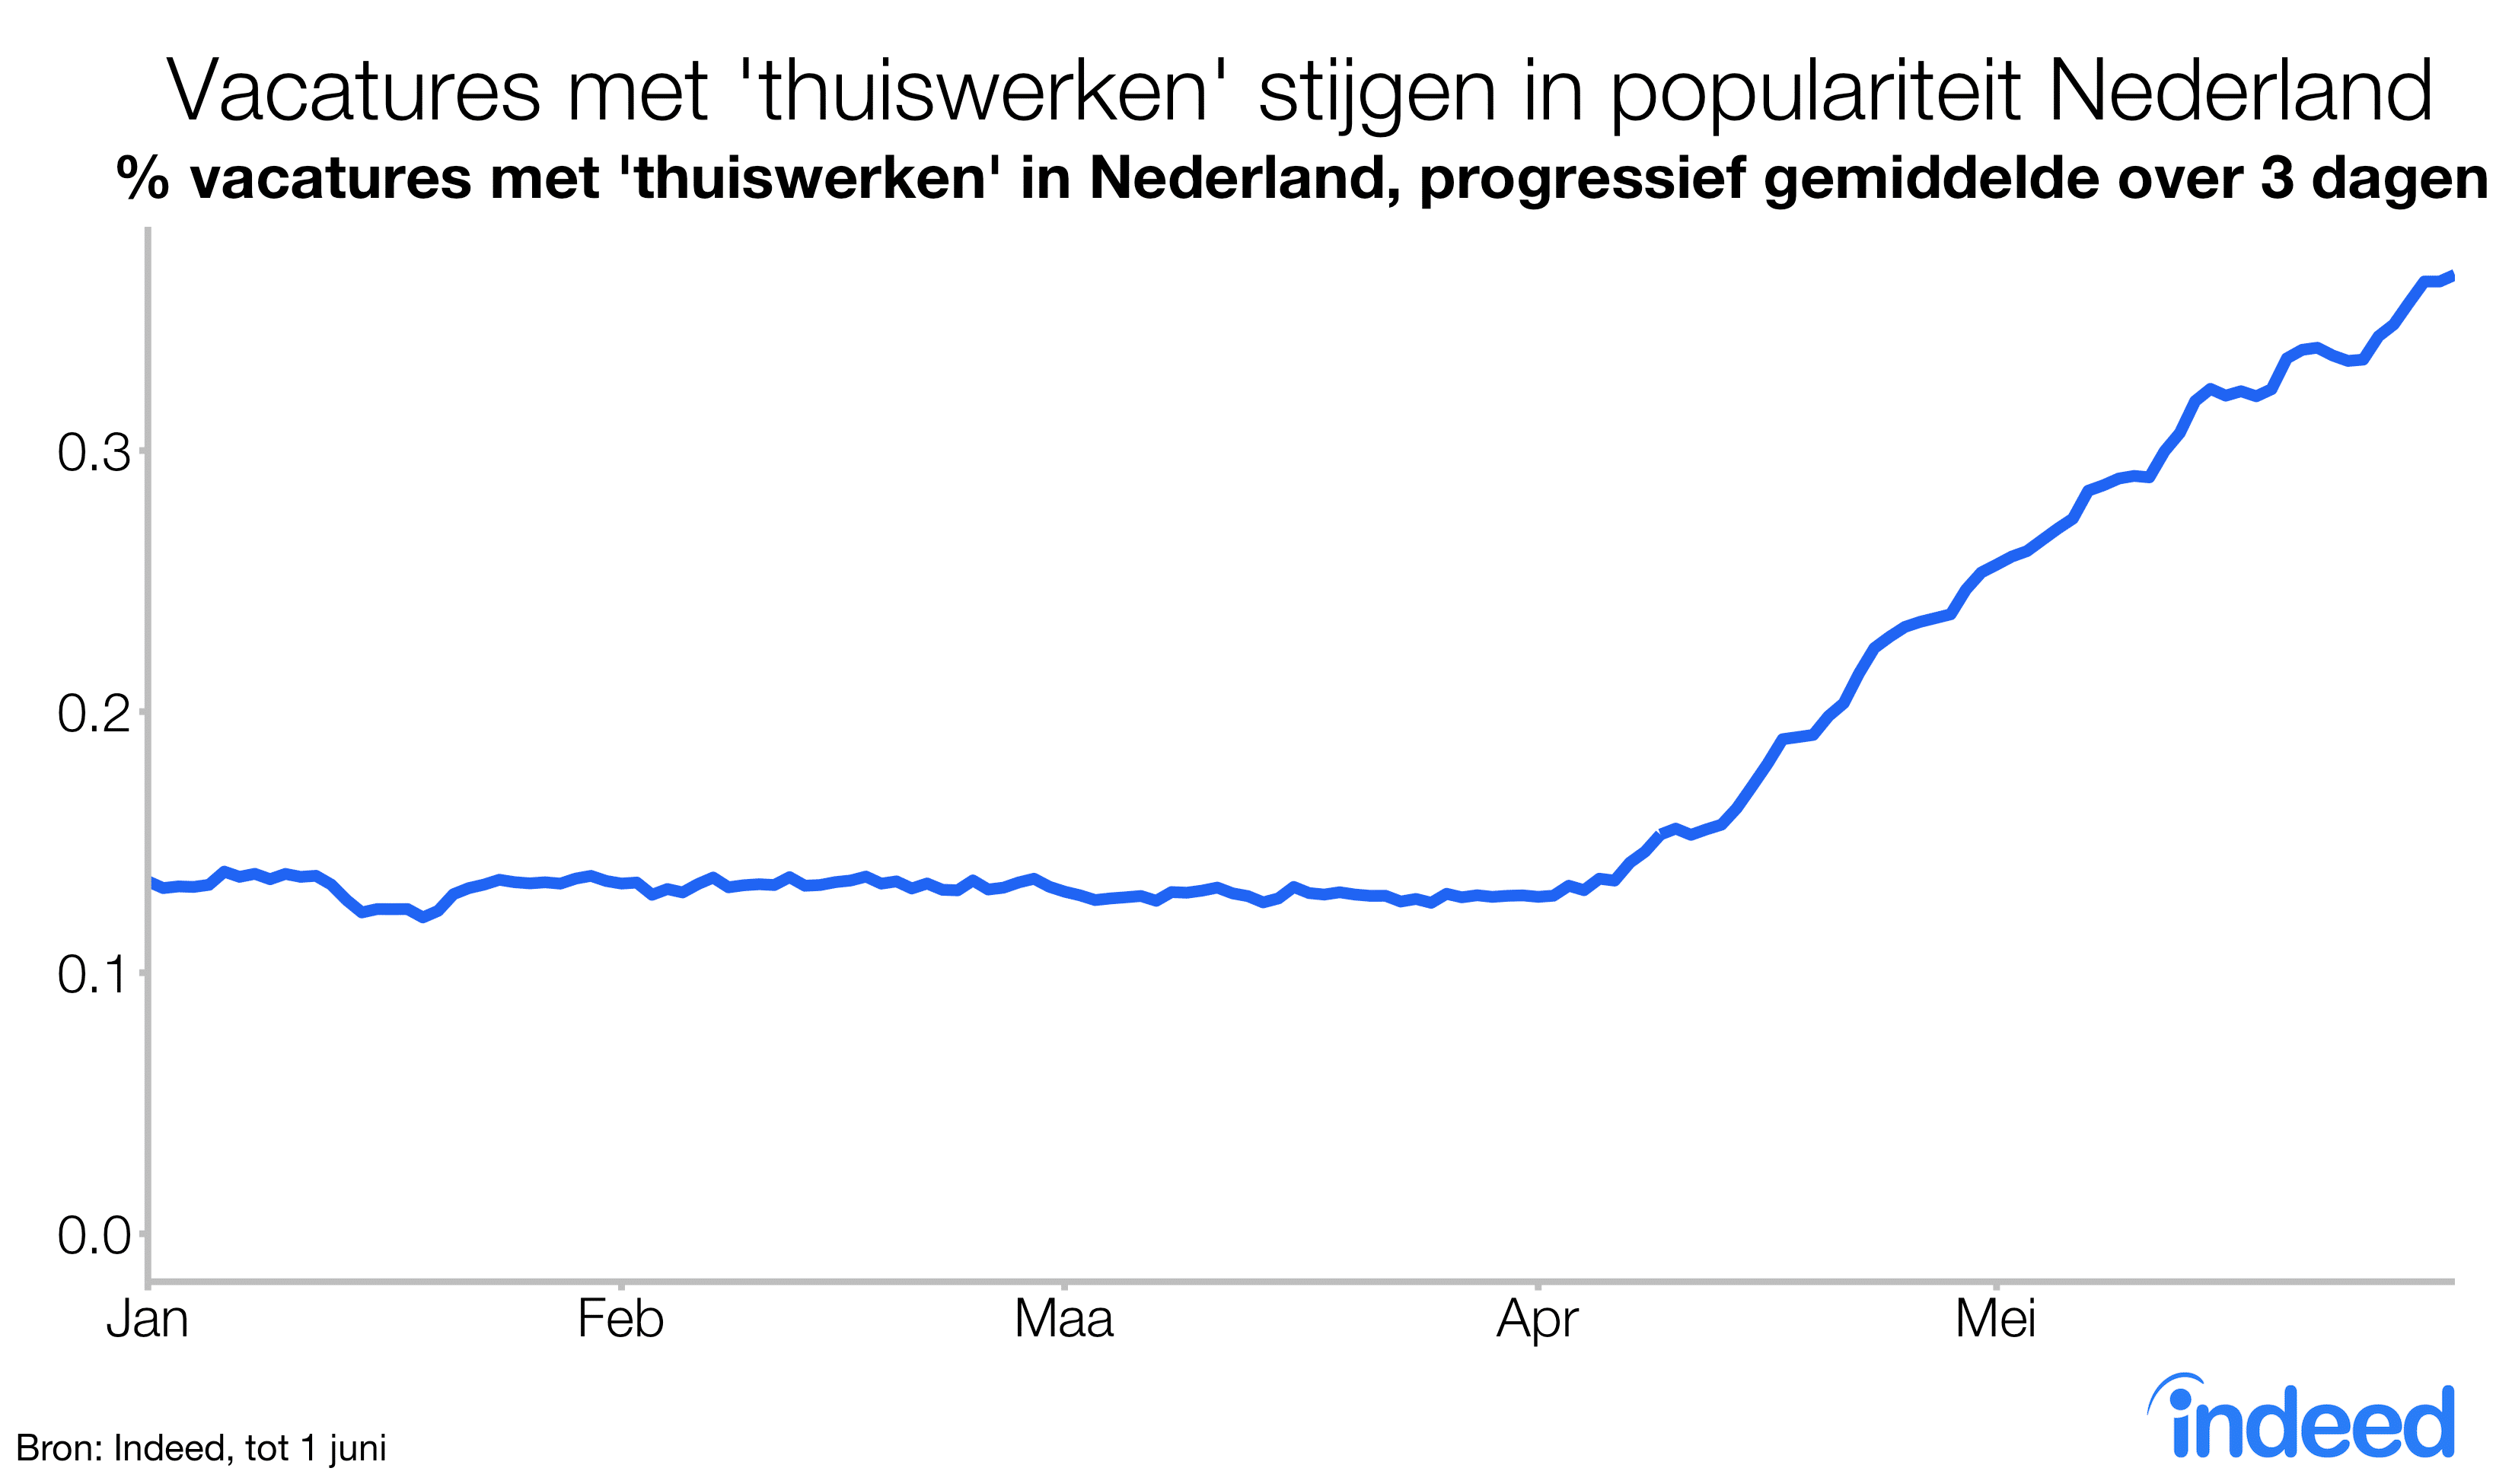 Vacatures met thuiswerken stijgen in populariteit in Nederland